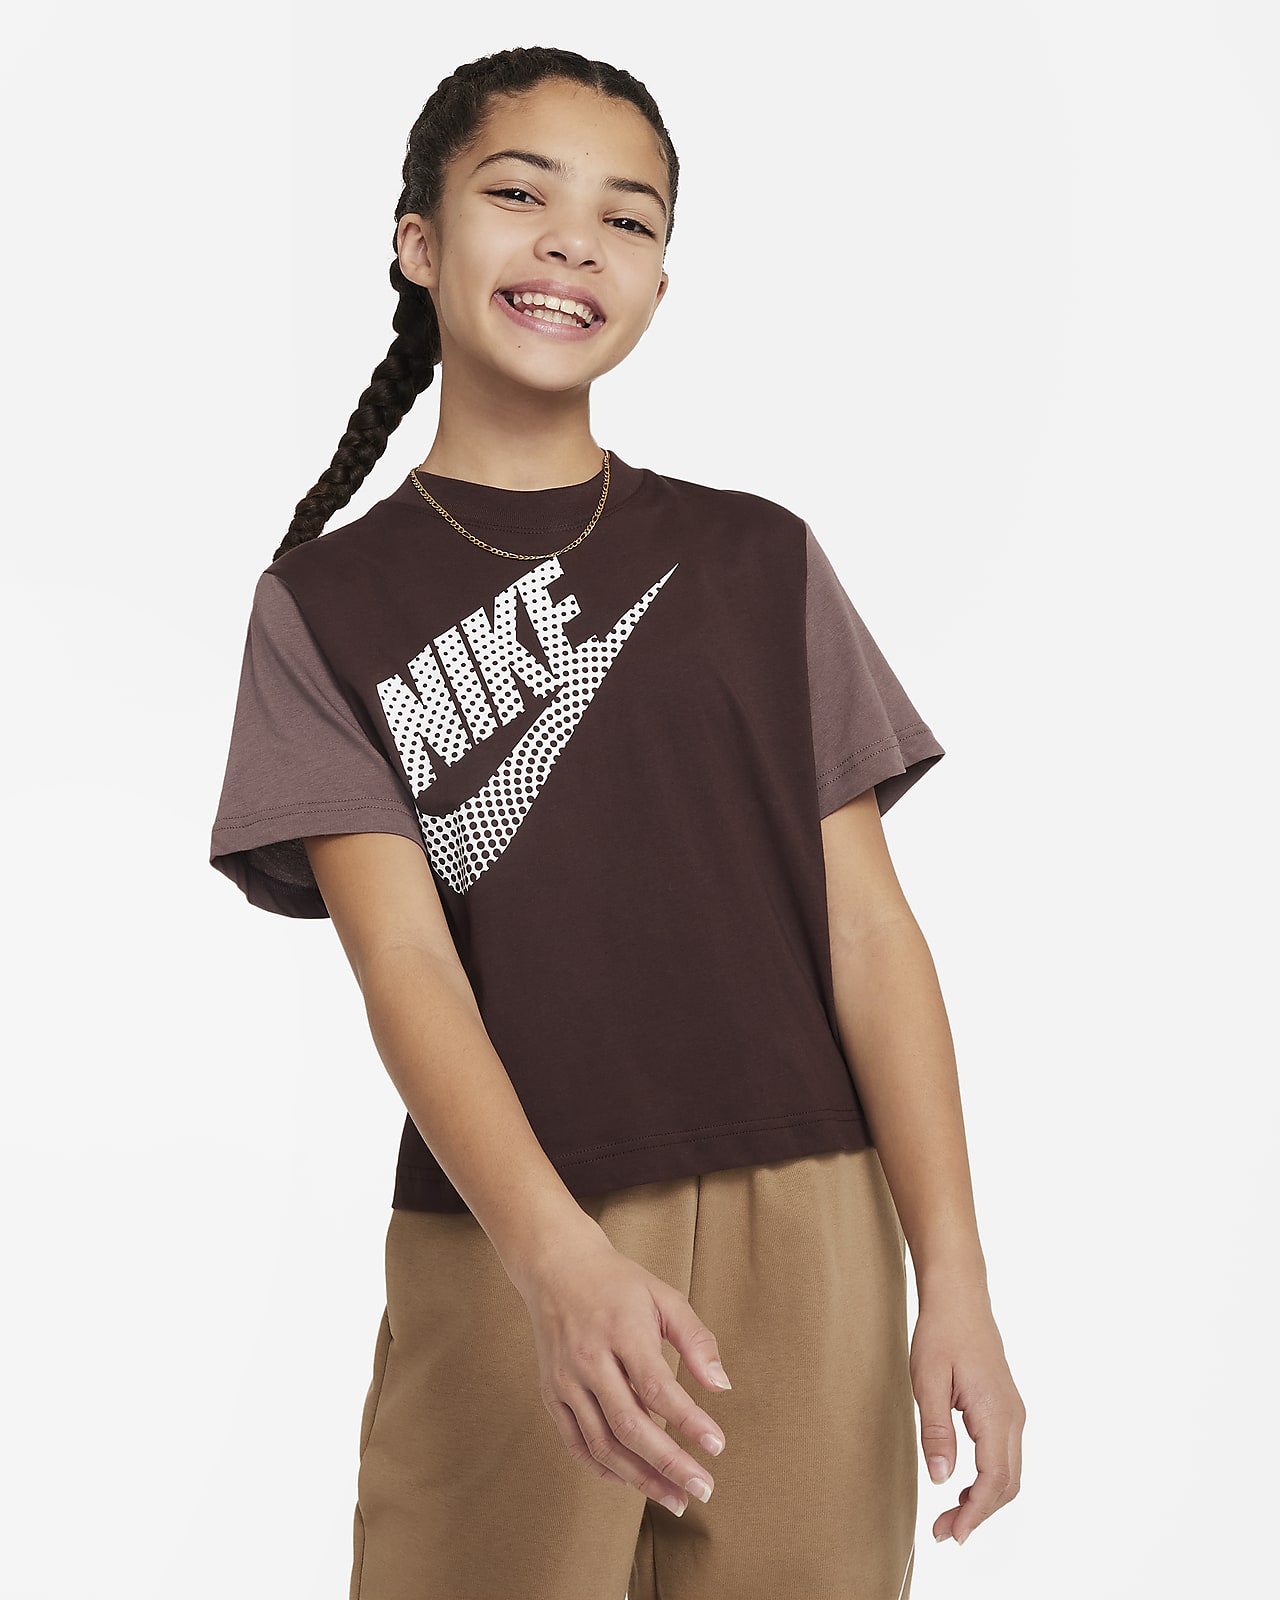 Sportswear Essential Kids' (Girls') Dance T-Shirt. Nike IL